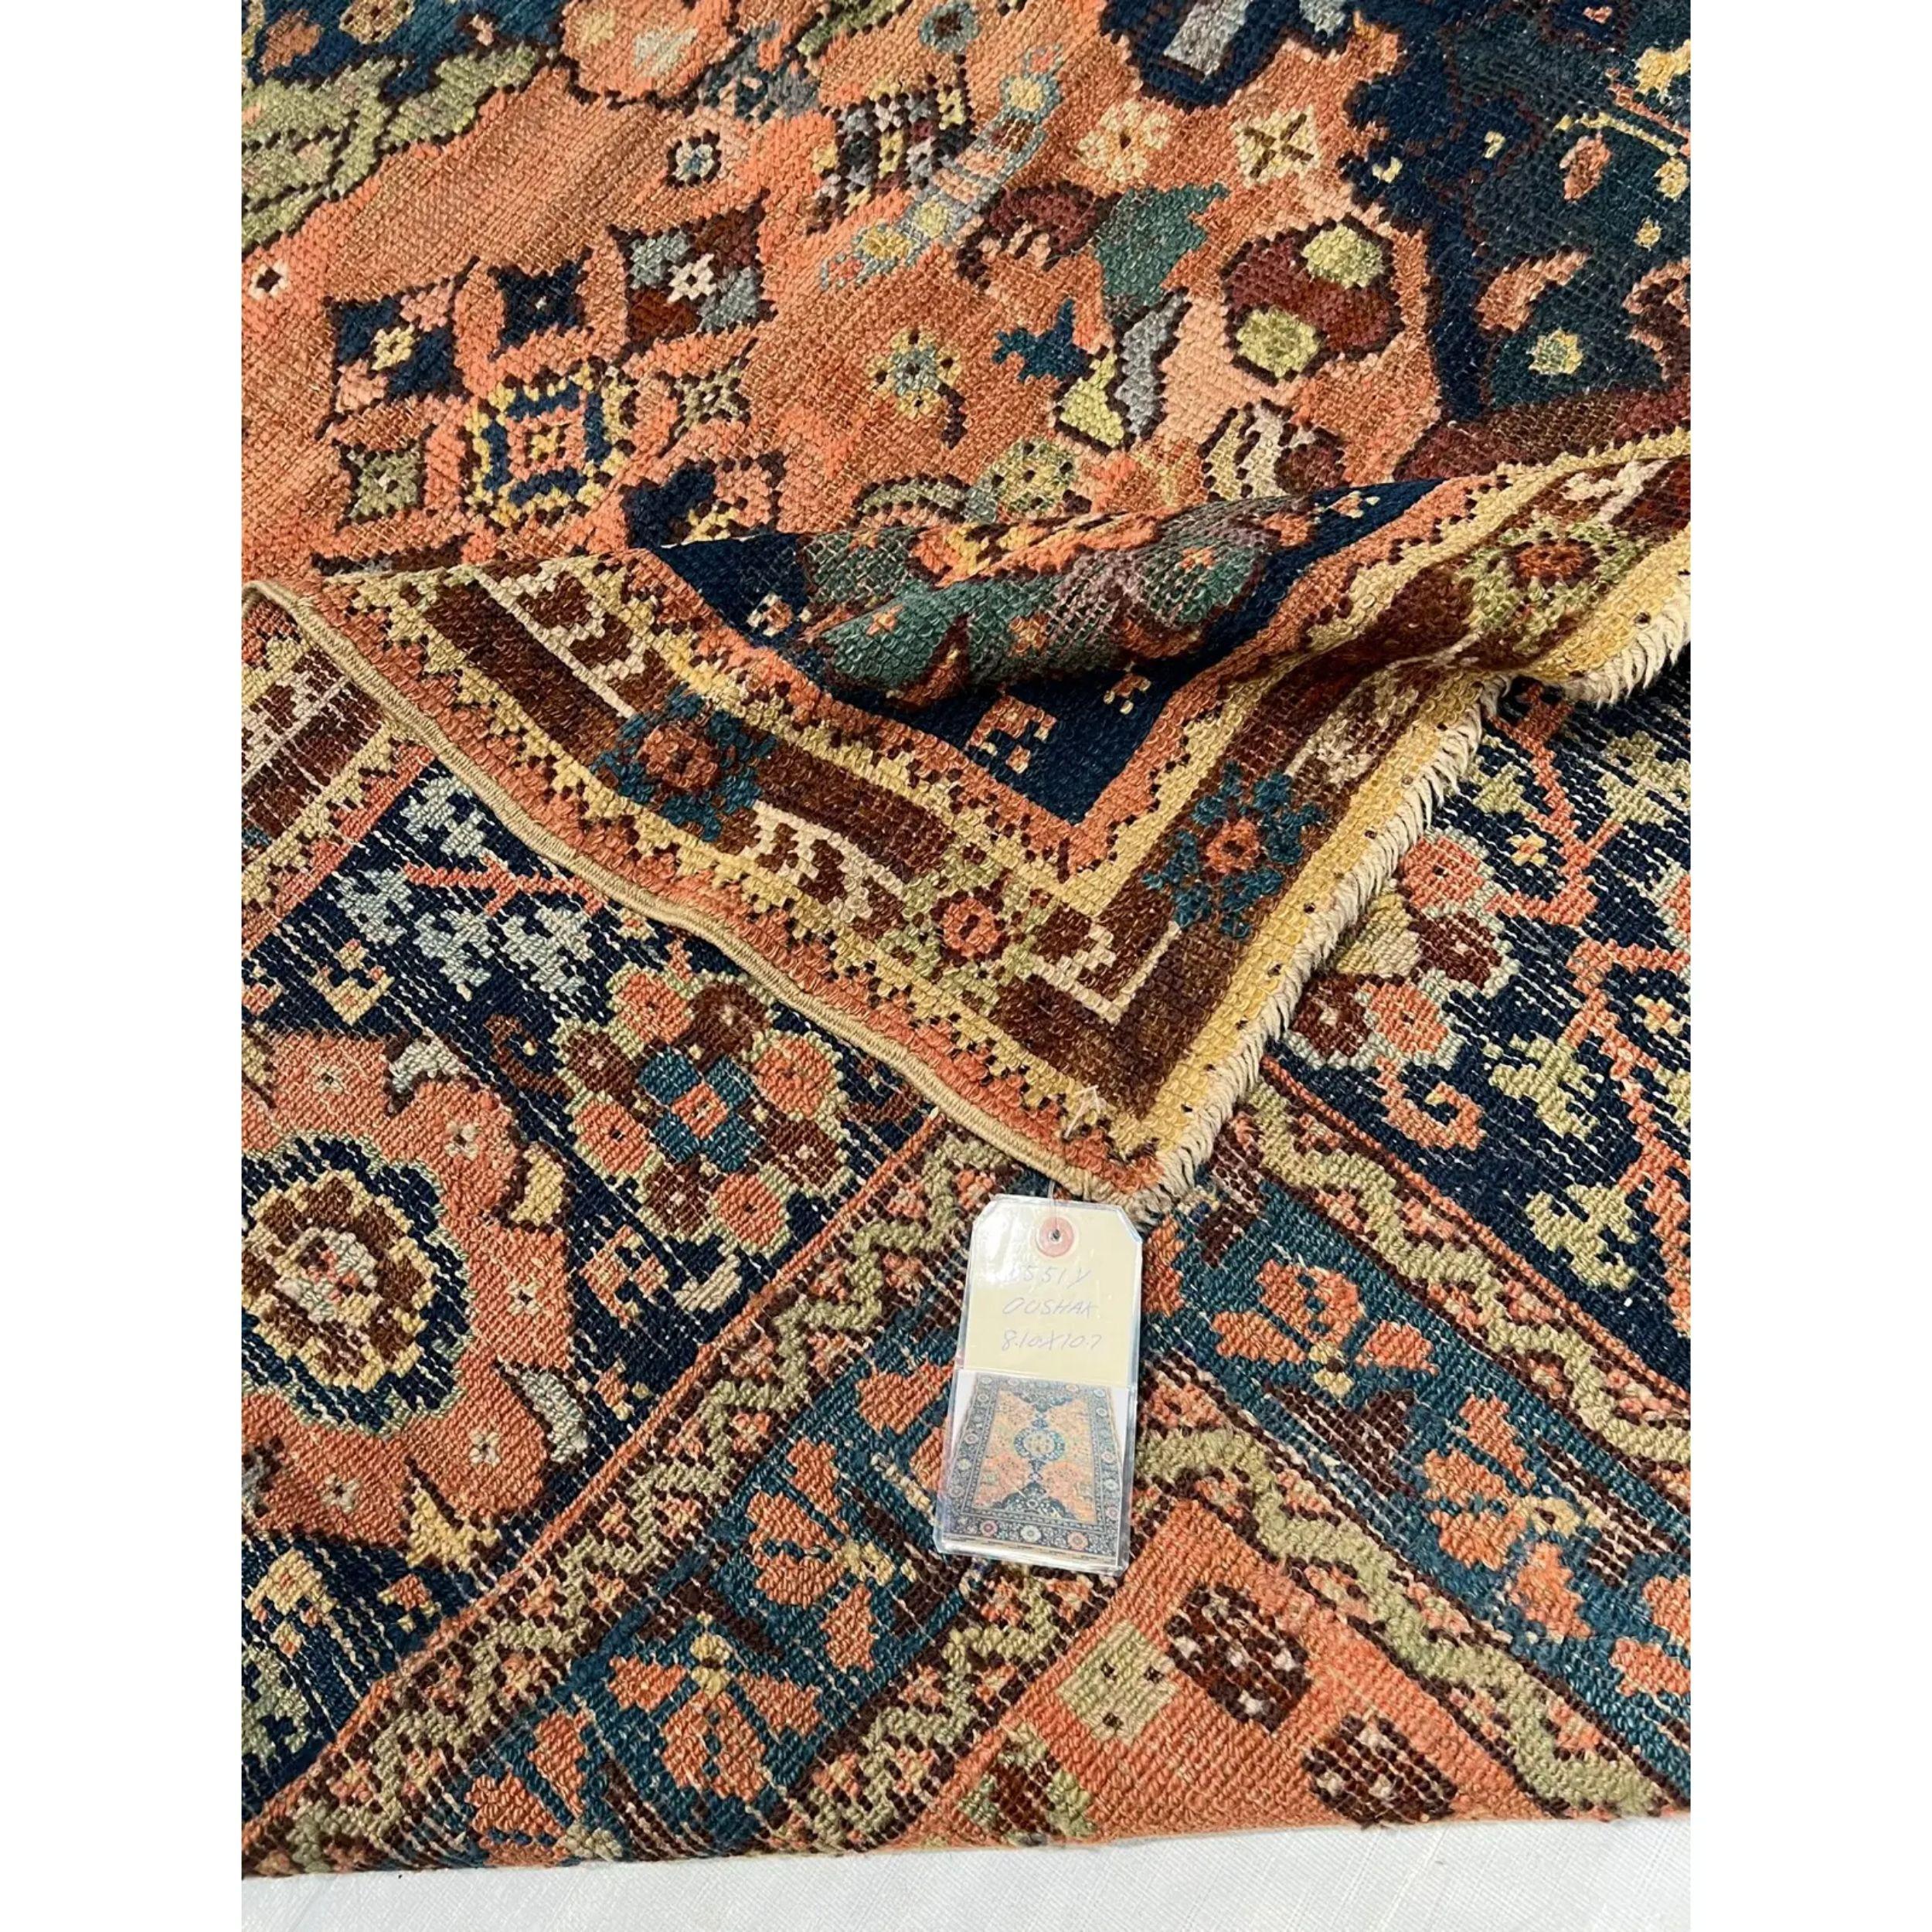 Eine umfangreiche Collection von antiken türkischen Teppichen
Türkische Teppiche (auch als anatolische Teppiche bezeichnet) sind wohl die Teppiche, mit denen alles begann. Diese Teppiche gehörten zu der ersten Welle von antiken Orientteppichen, die